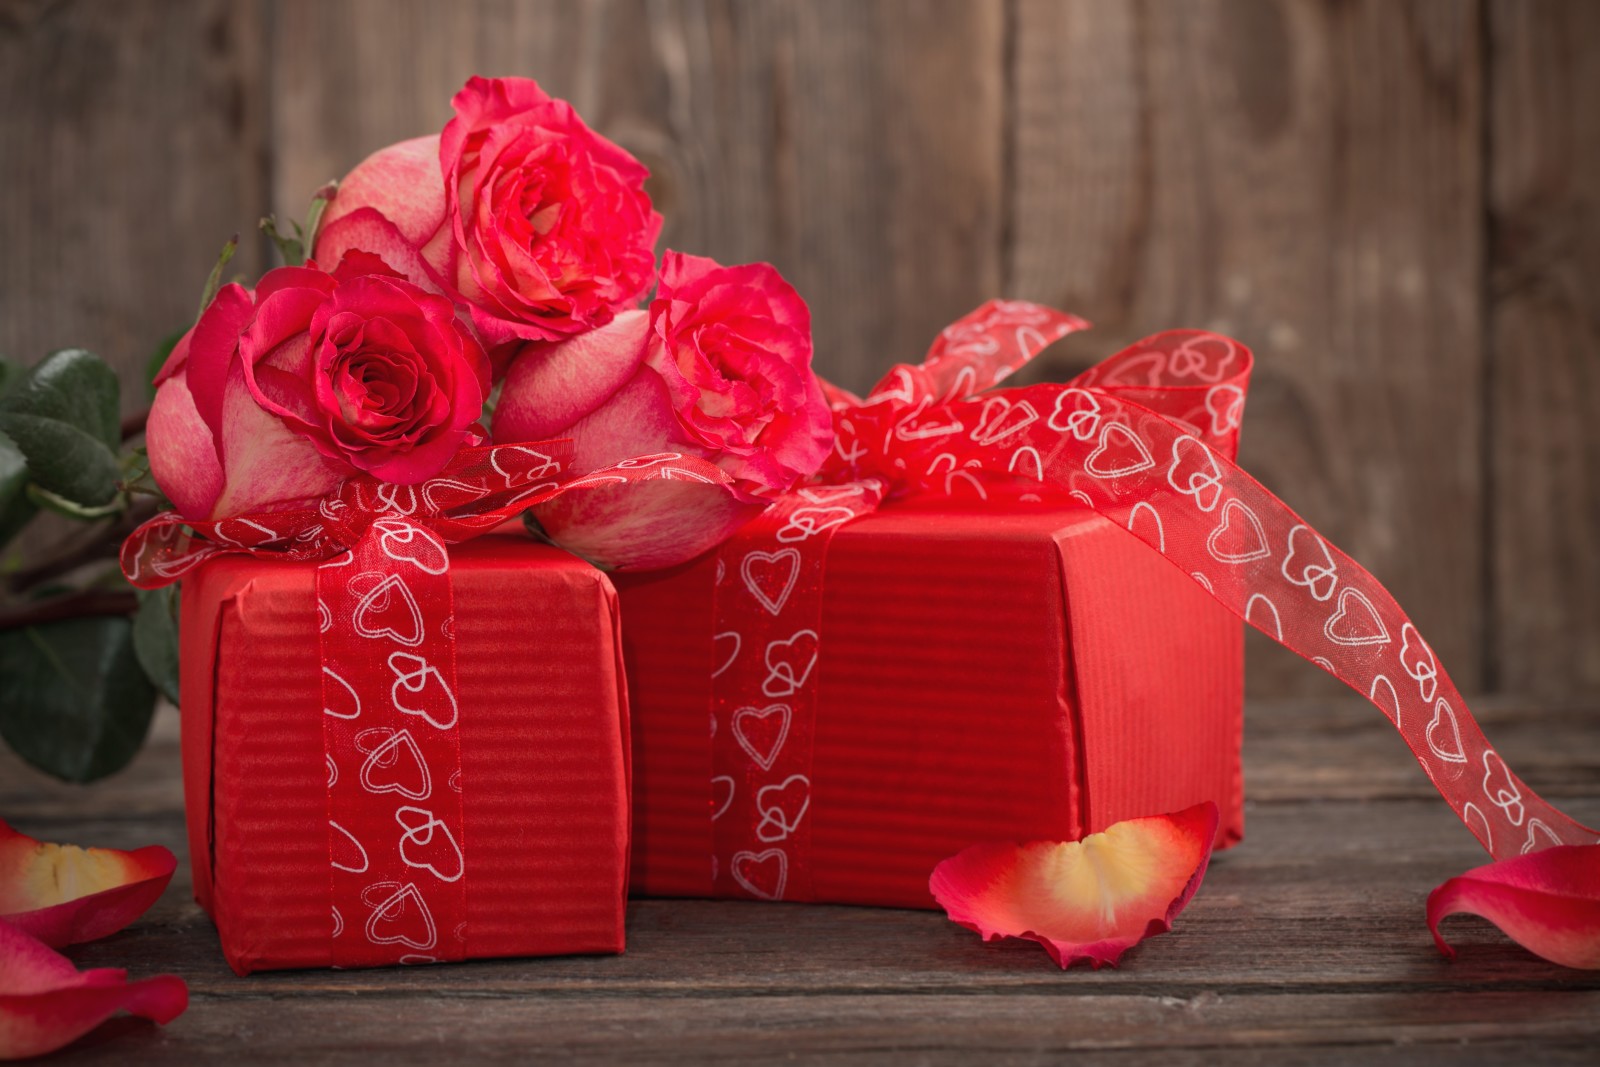 cinta, romantis, hari Valentine, hadiah, mawar, jantung